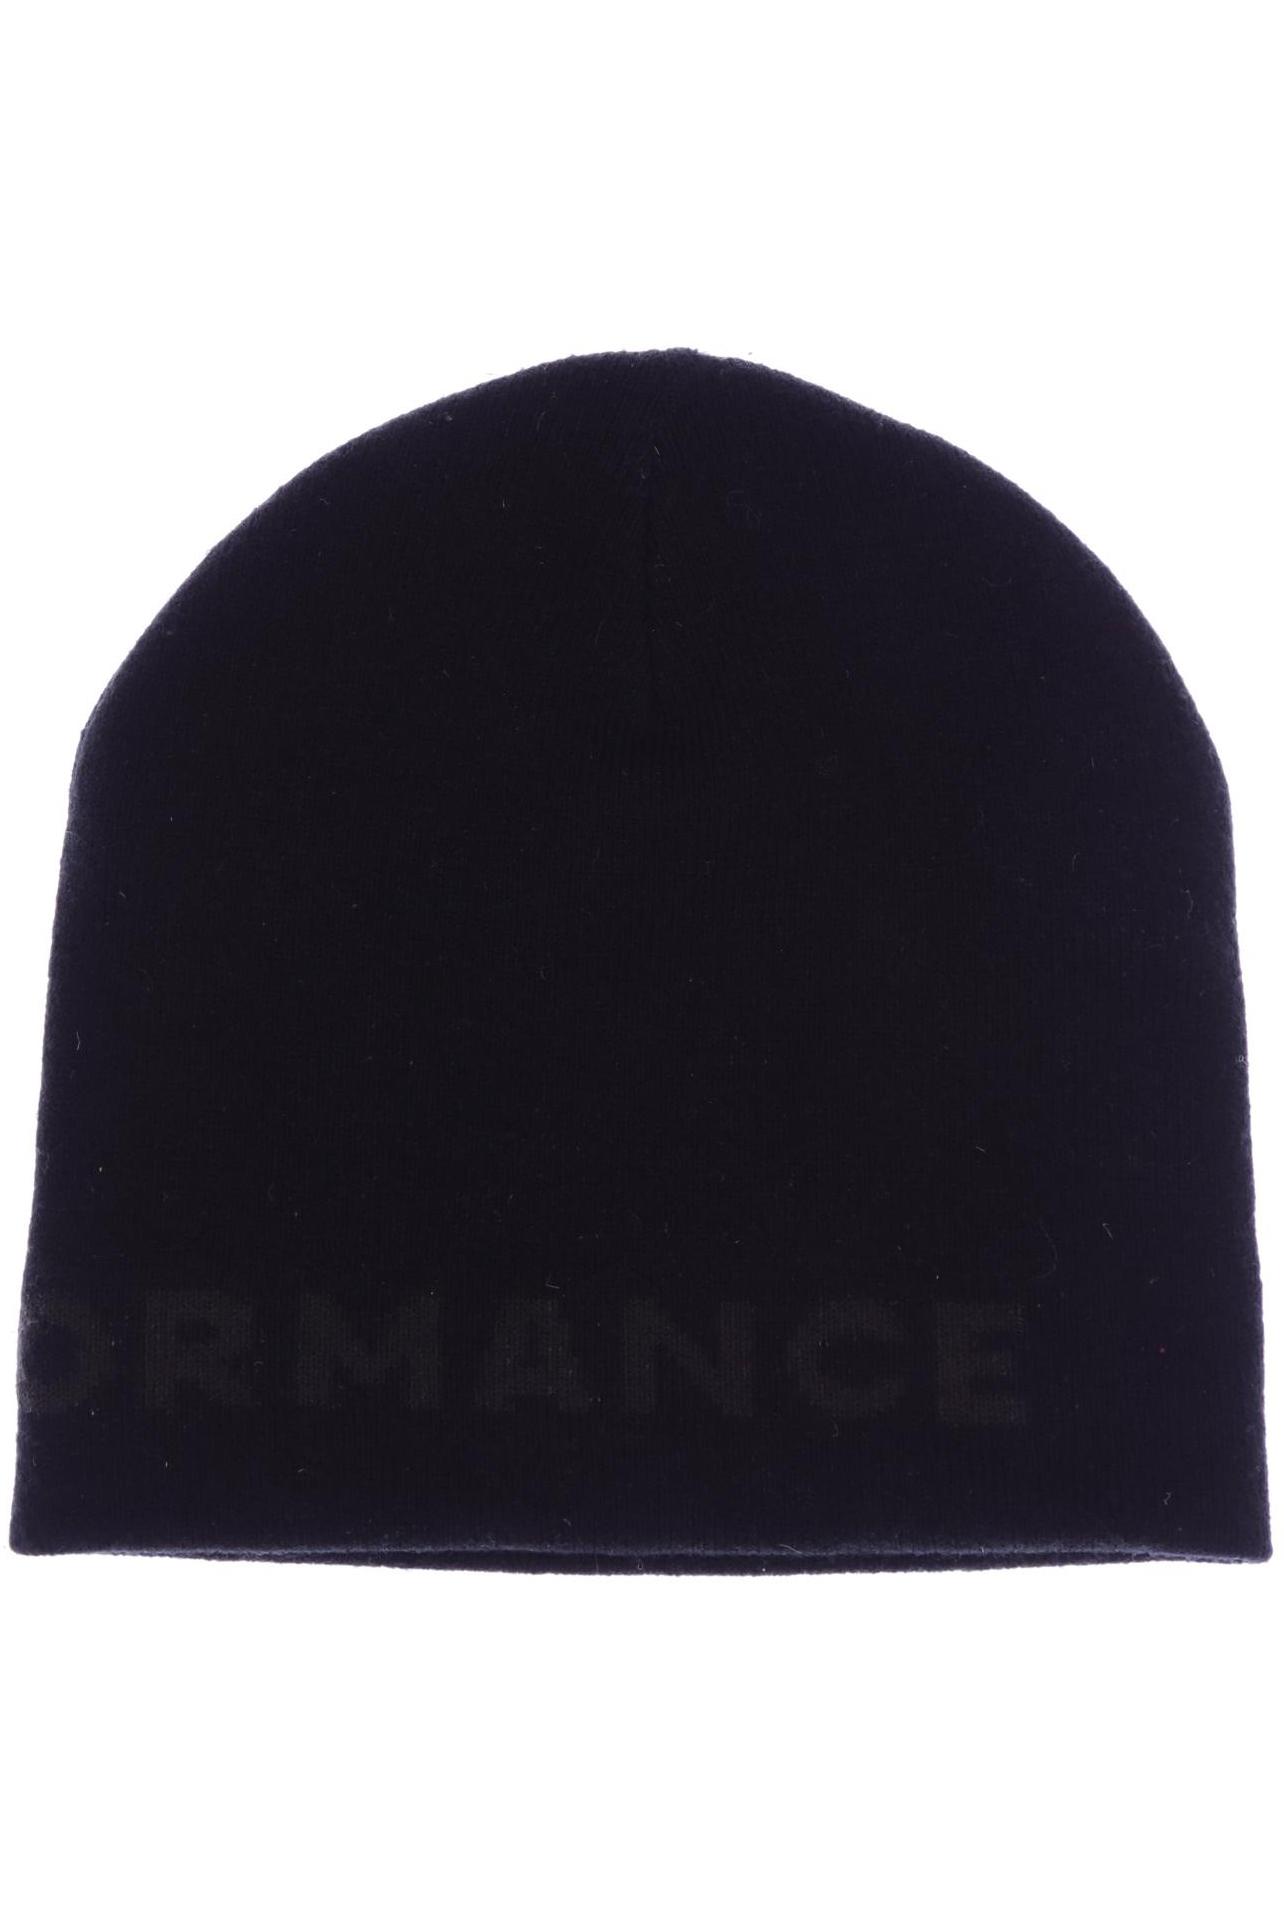 Peak Performance Damen Hut/Mütze, schwarz von Peak Performance